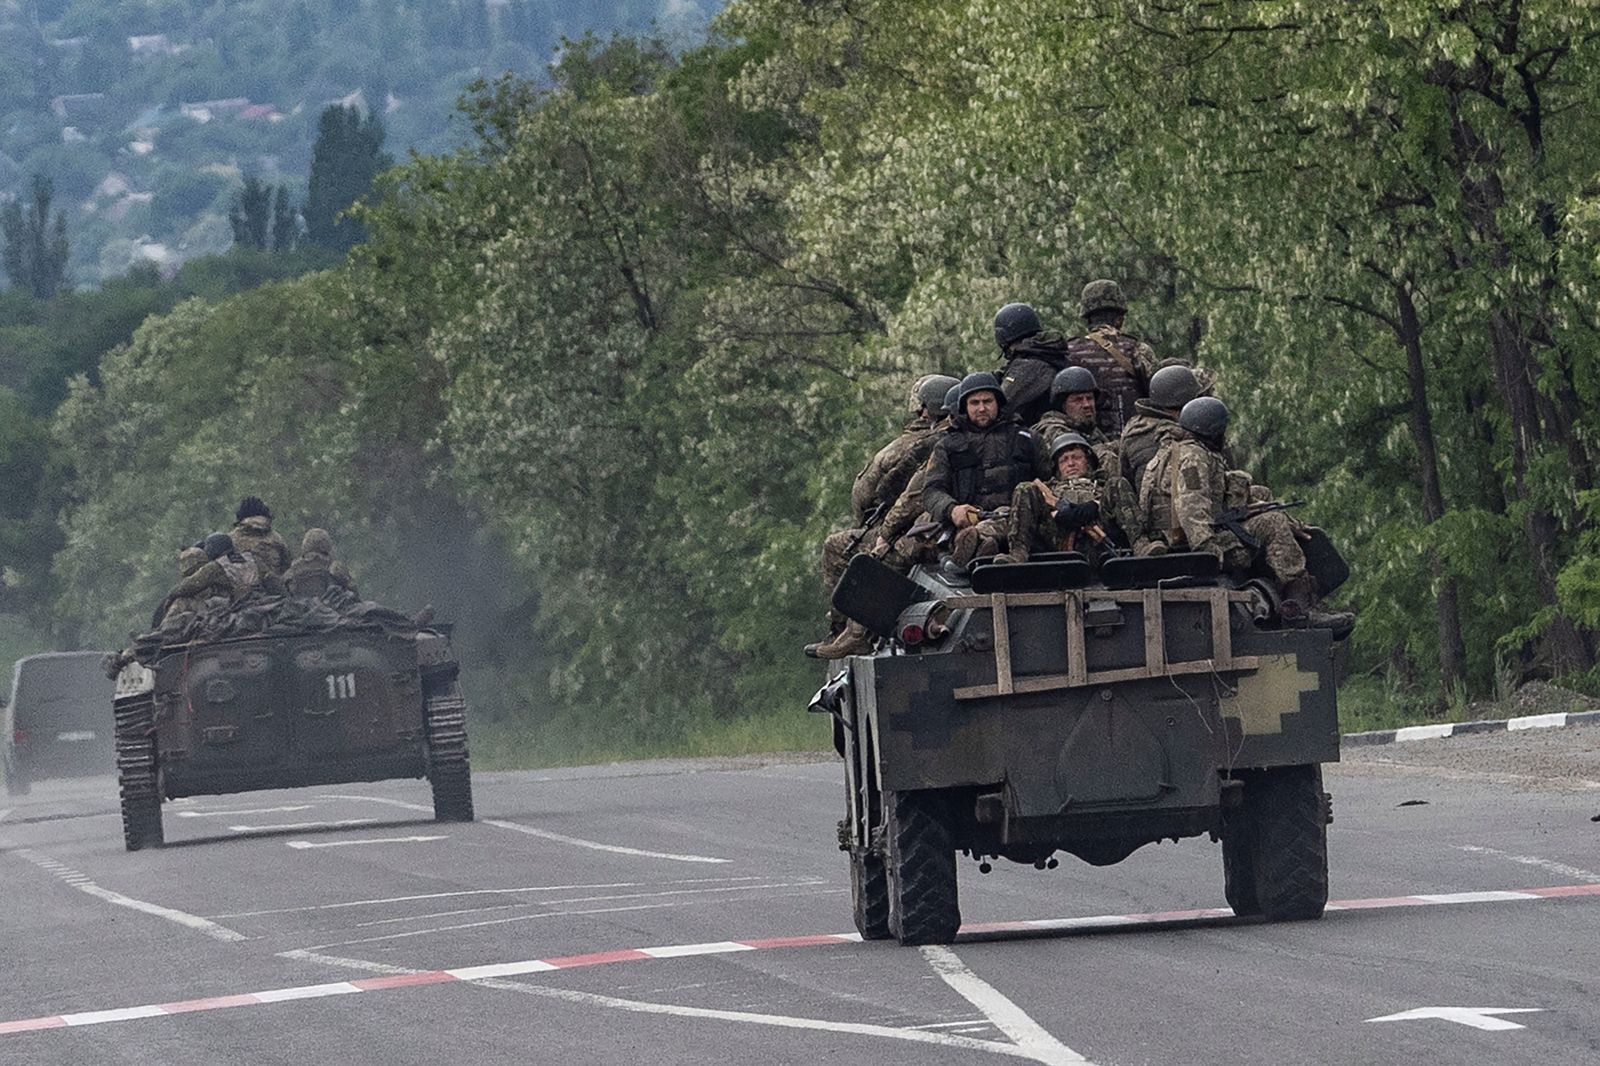 جنود أوكرانيون على متن مركبة عسكرية في الطريق بين كوستيانتينيفكا وباخموت في منطقة دونيتسك شرقي أوكرانيا - 28 مايو 2022 - REUTERS